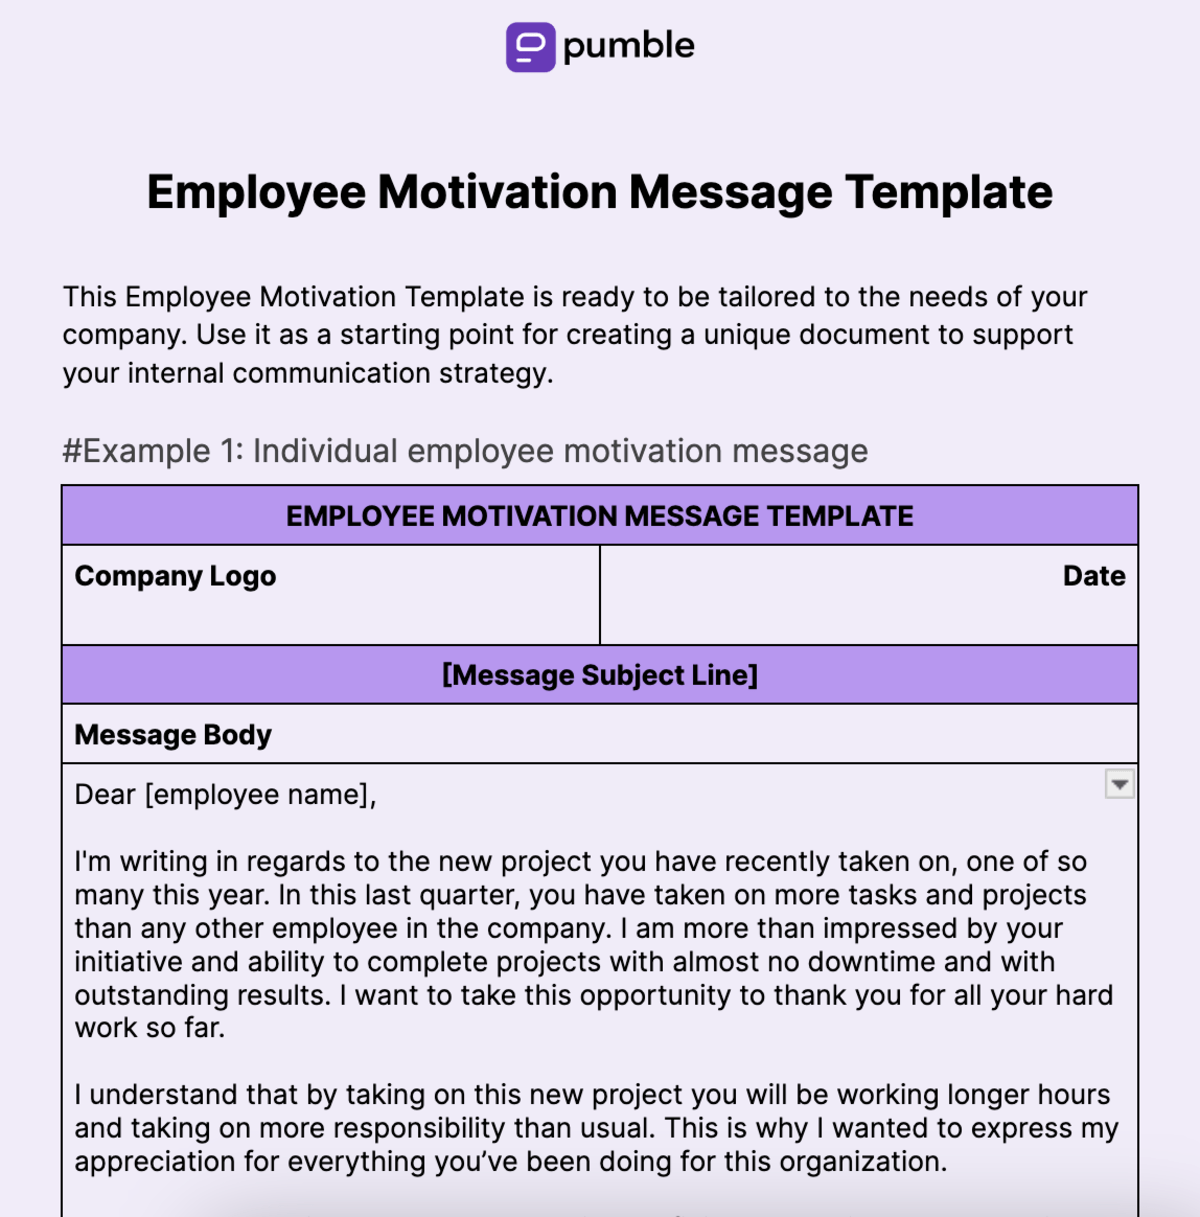 Employee Motivation Message Template